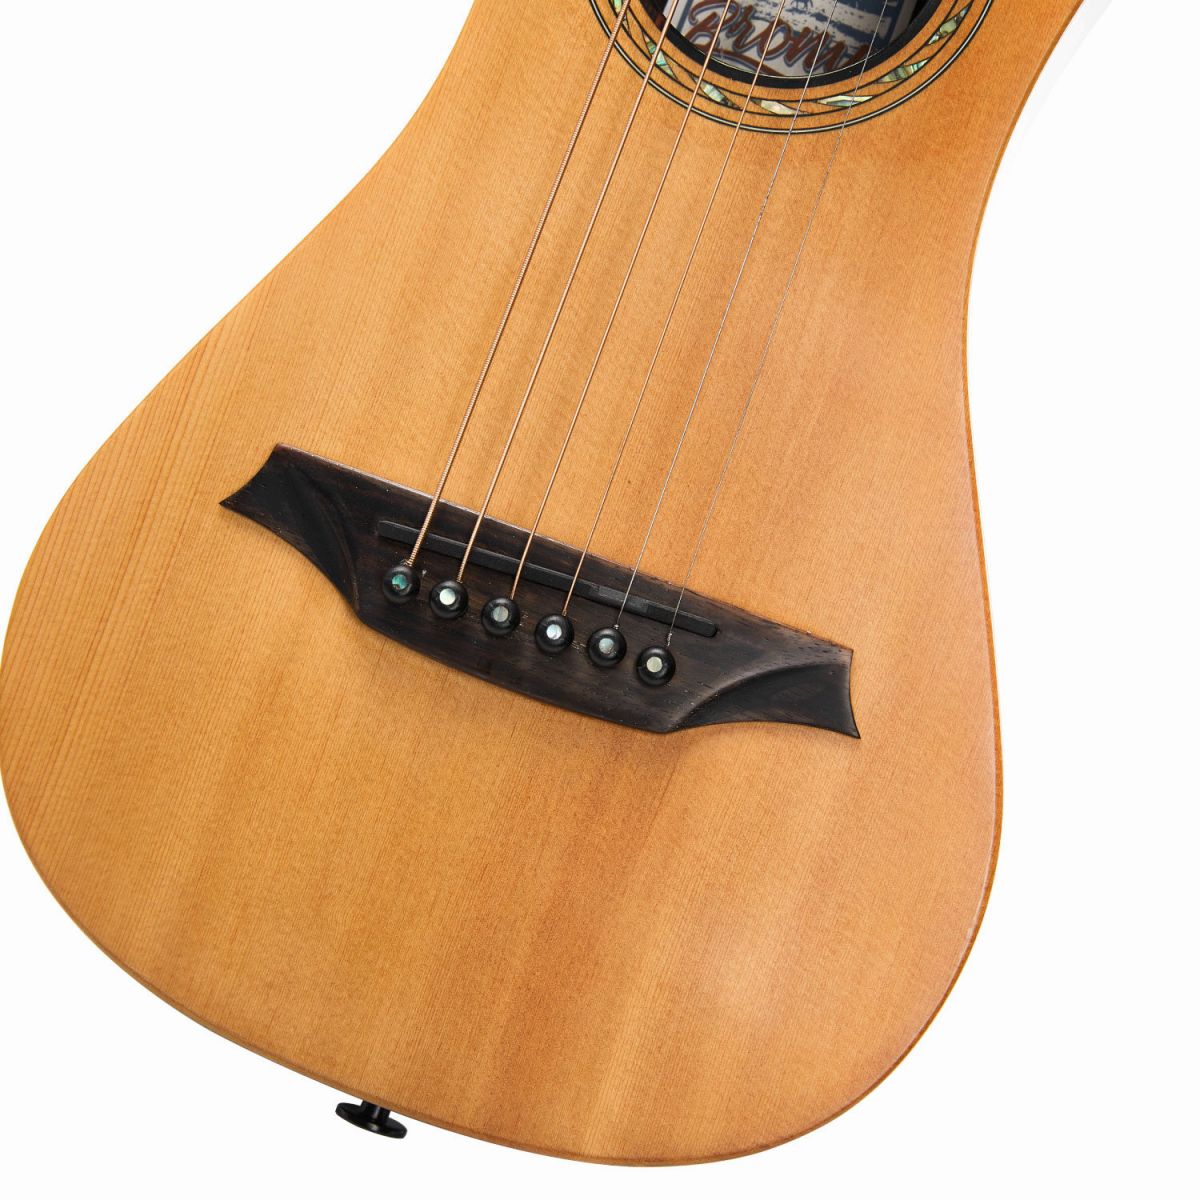 Bromo BAR3 オール単板 トラベルアコースティックギター ミニギター